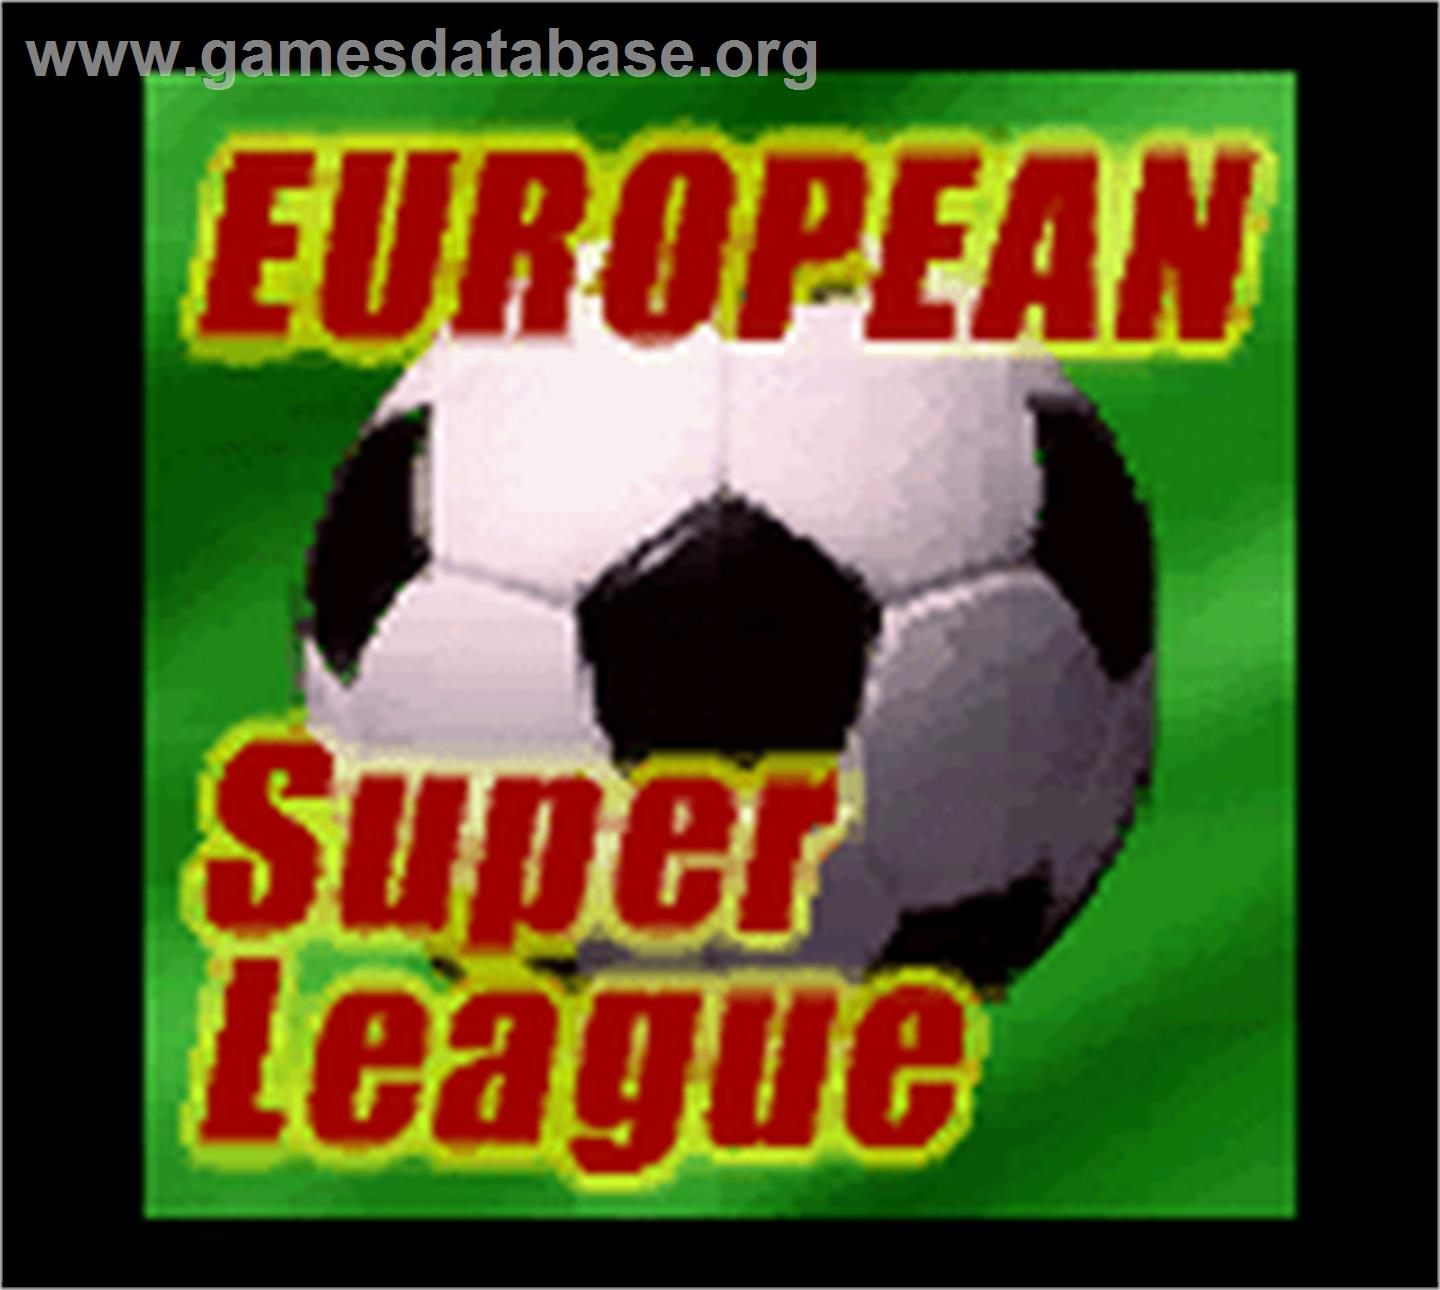 European Super League - Nintendo Game Boy Color - Artwork - Title Screen